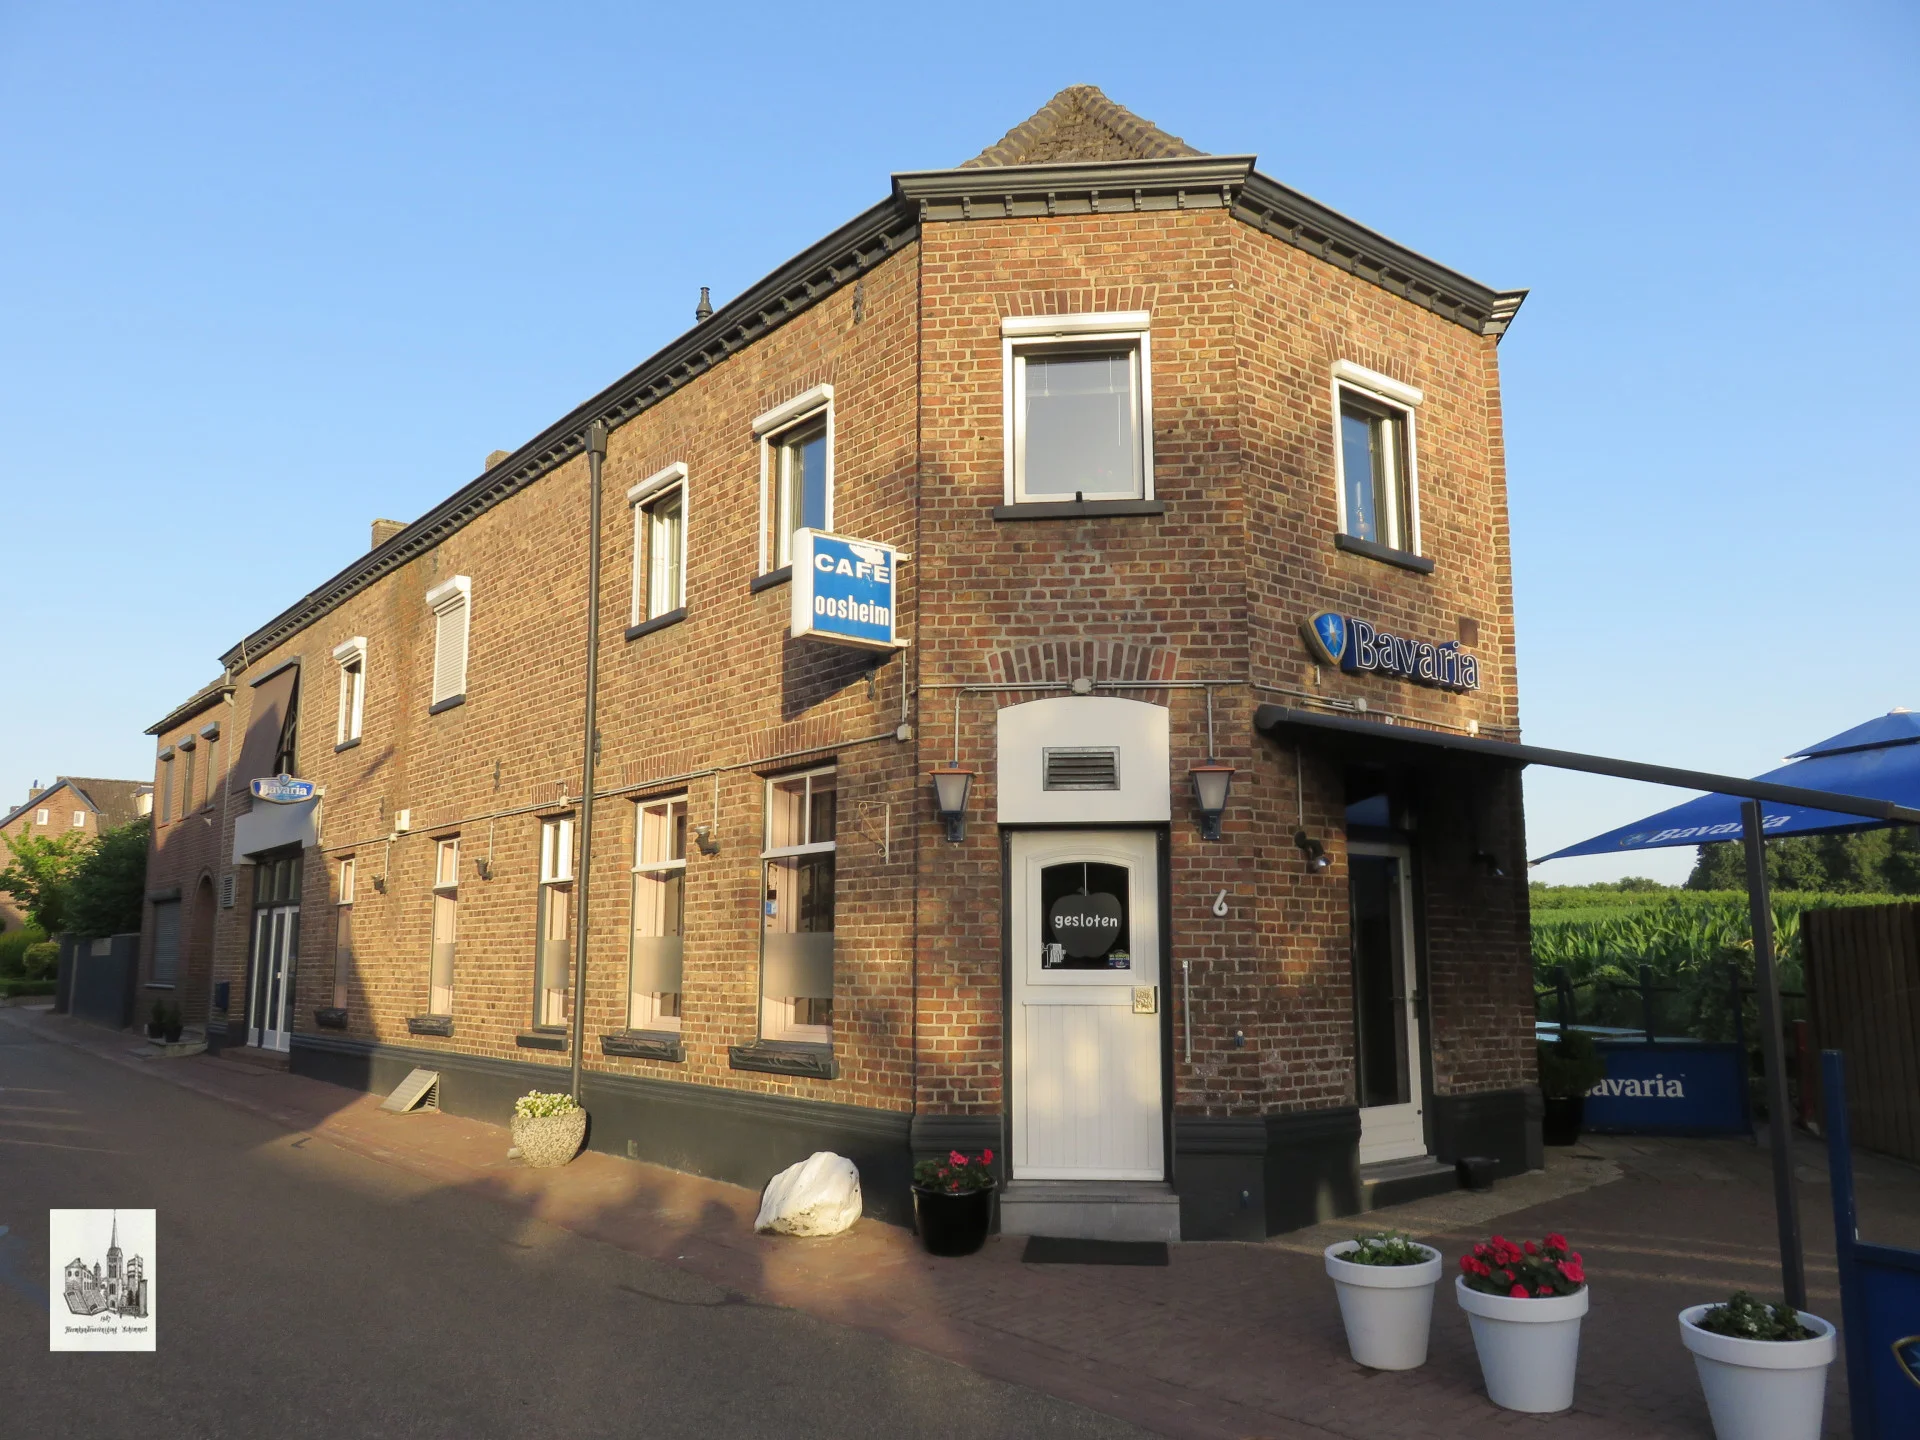 Café Speetjens, Oos Heim